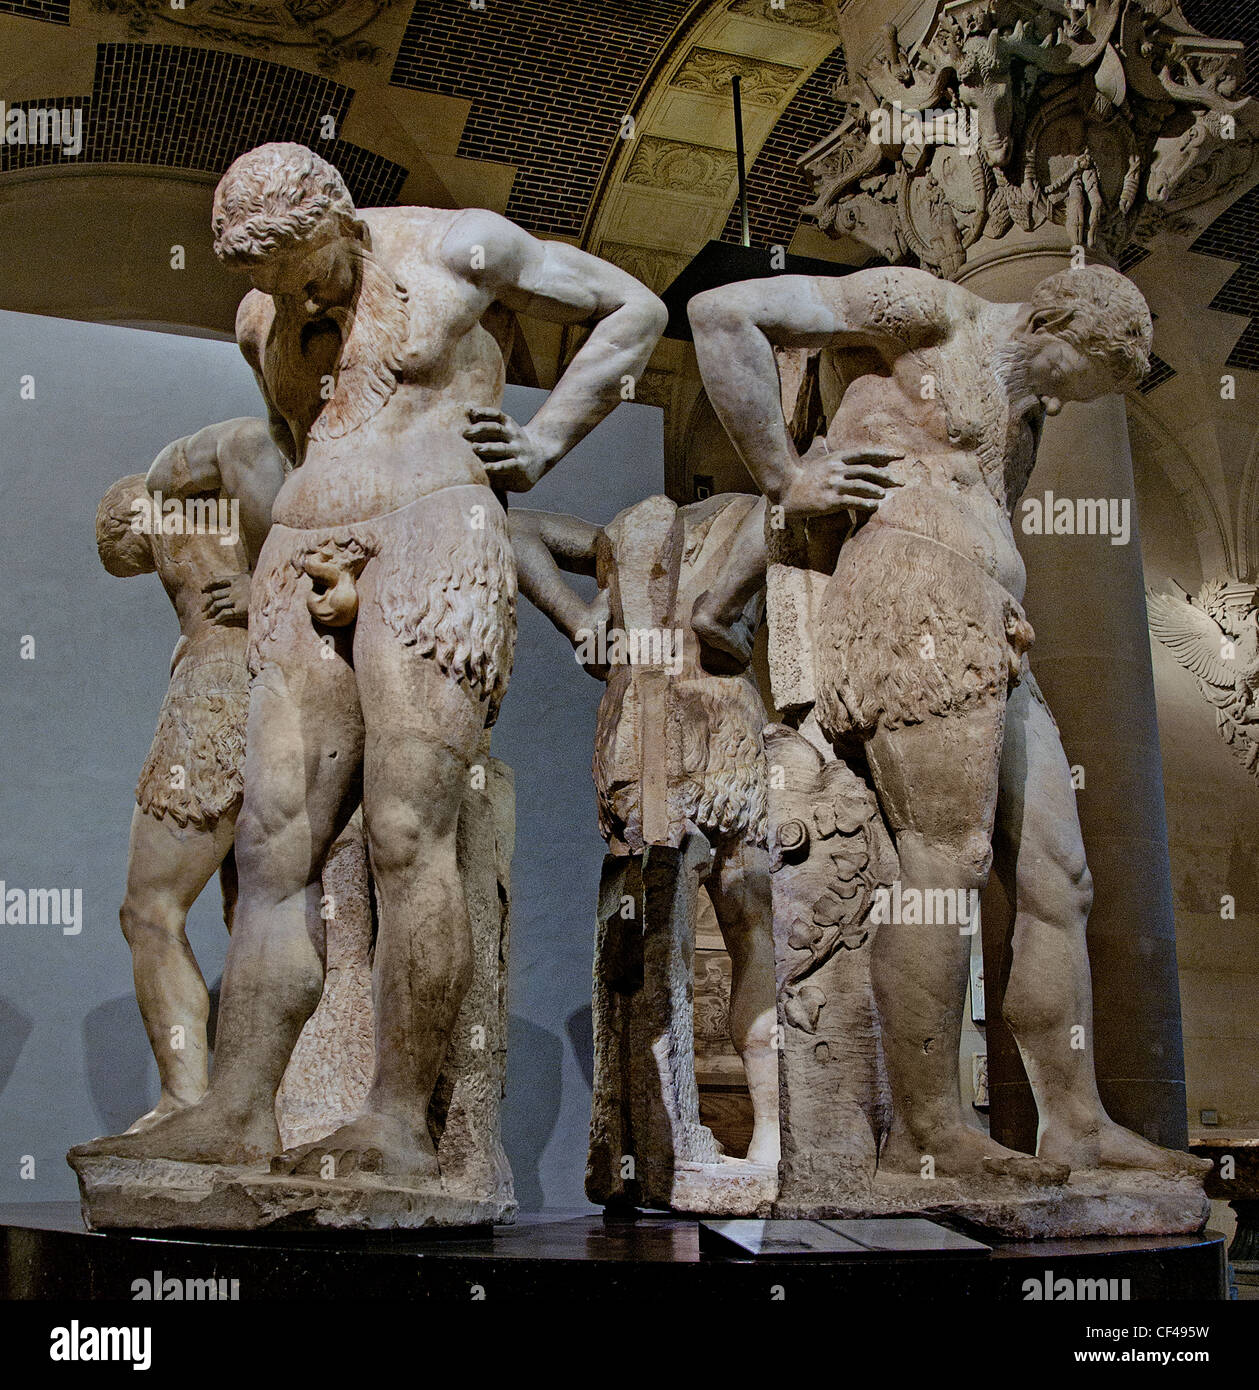 Satyrn auf Atlantis römischen des 2. Jahrhunderts n. Chr. Albani Collection Stockfoto